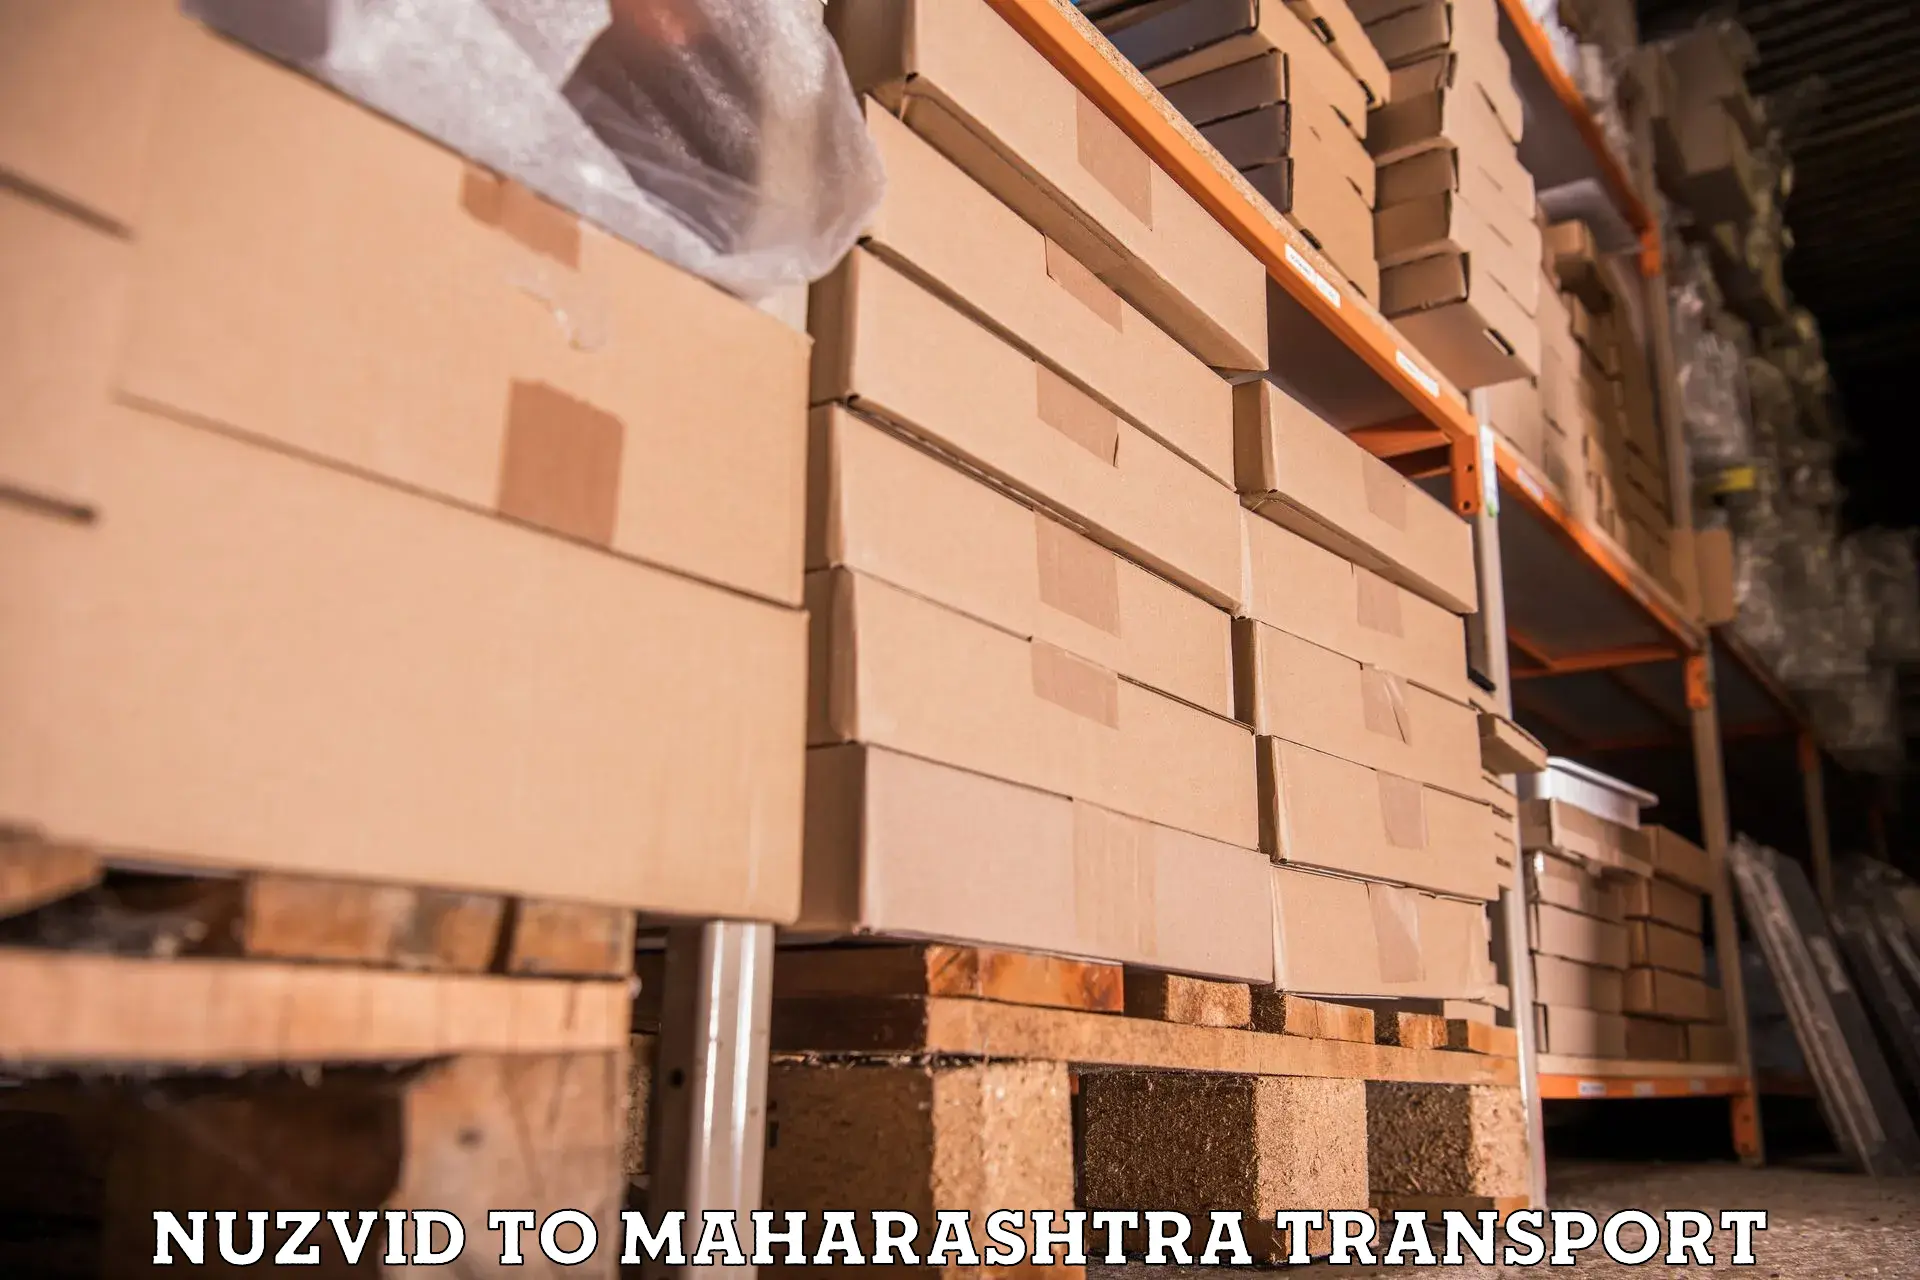 Truck transport companies in India Nuzvid to Bhiwandi